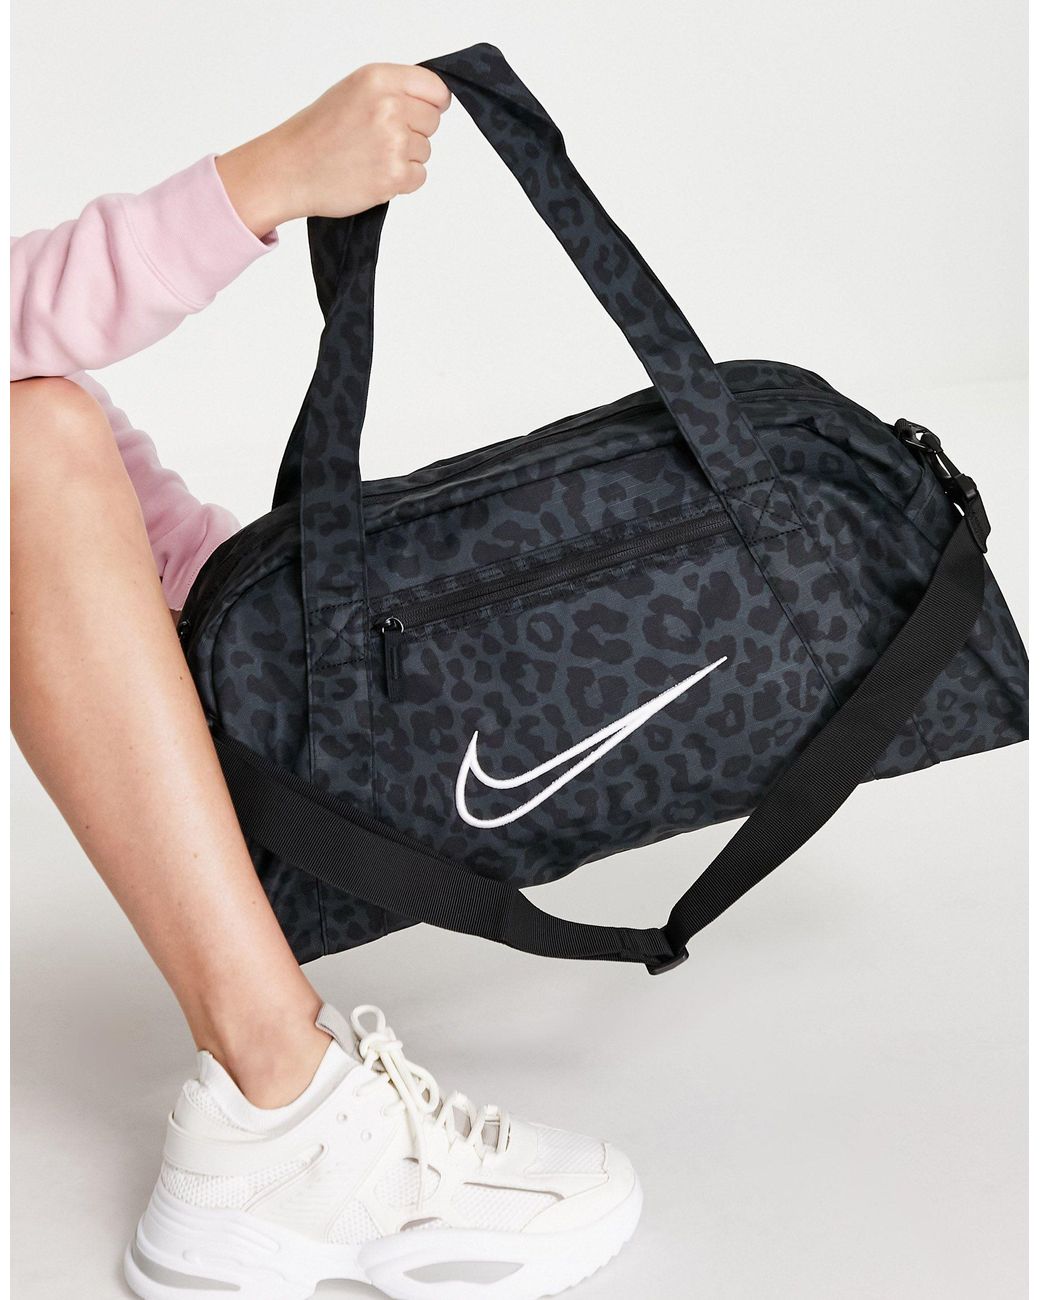 Nike Gym Club Holdall Leopard Print Bag in Black | Lyst Australia